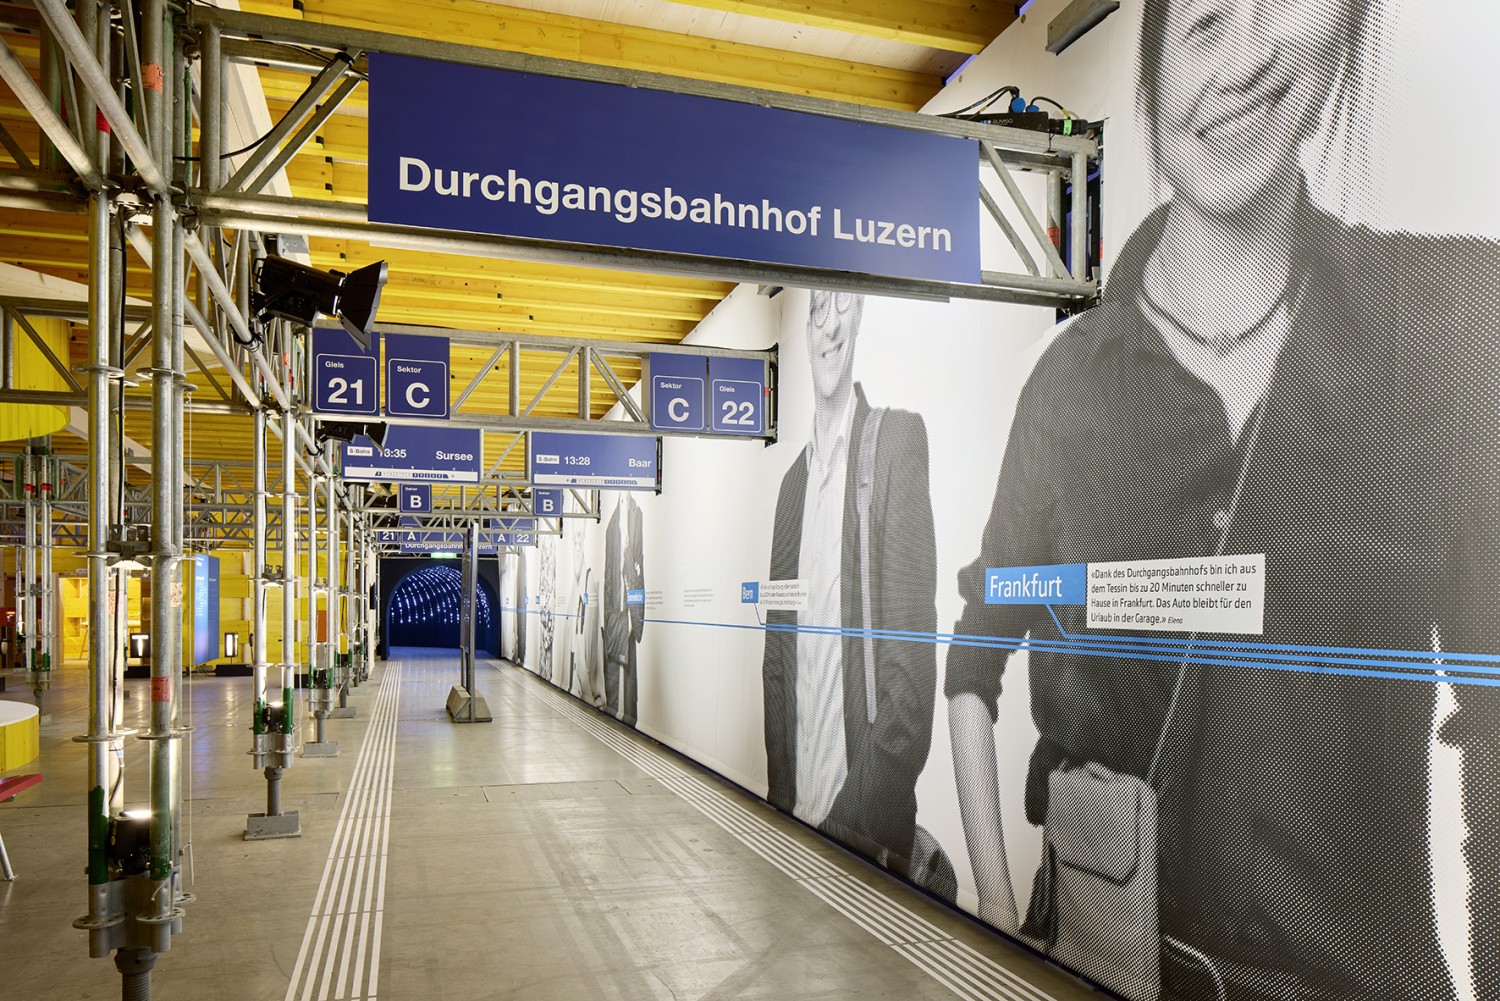 HUMMBURKART ARCHITEKTEN: Ausstellung Durchgangsbahnhof Luzern